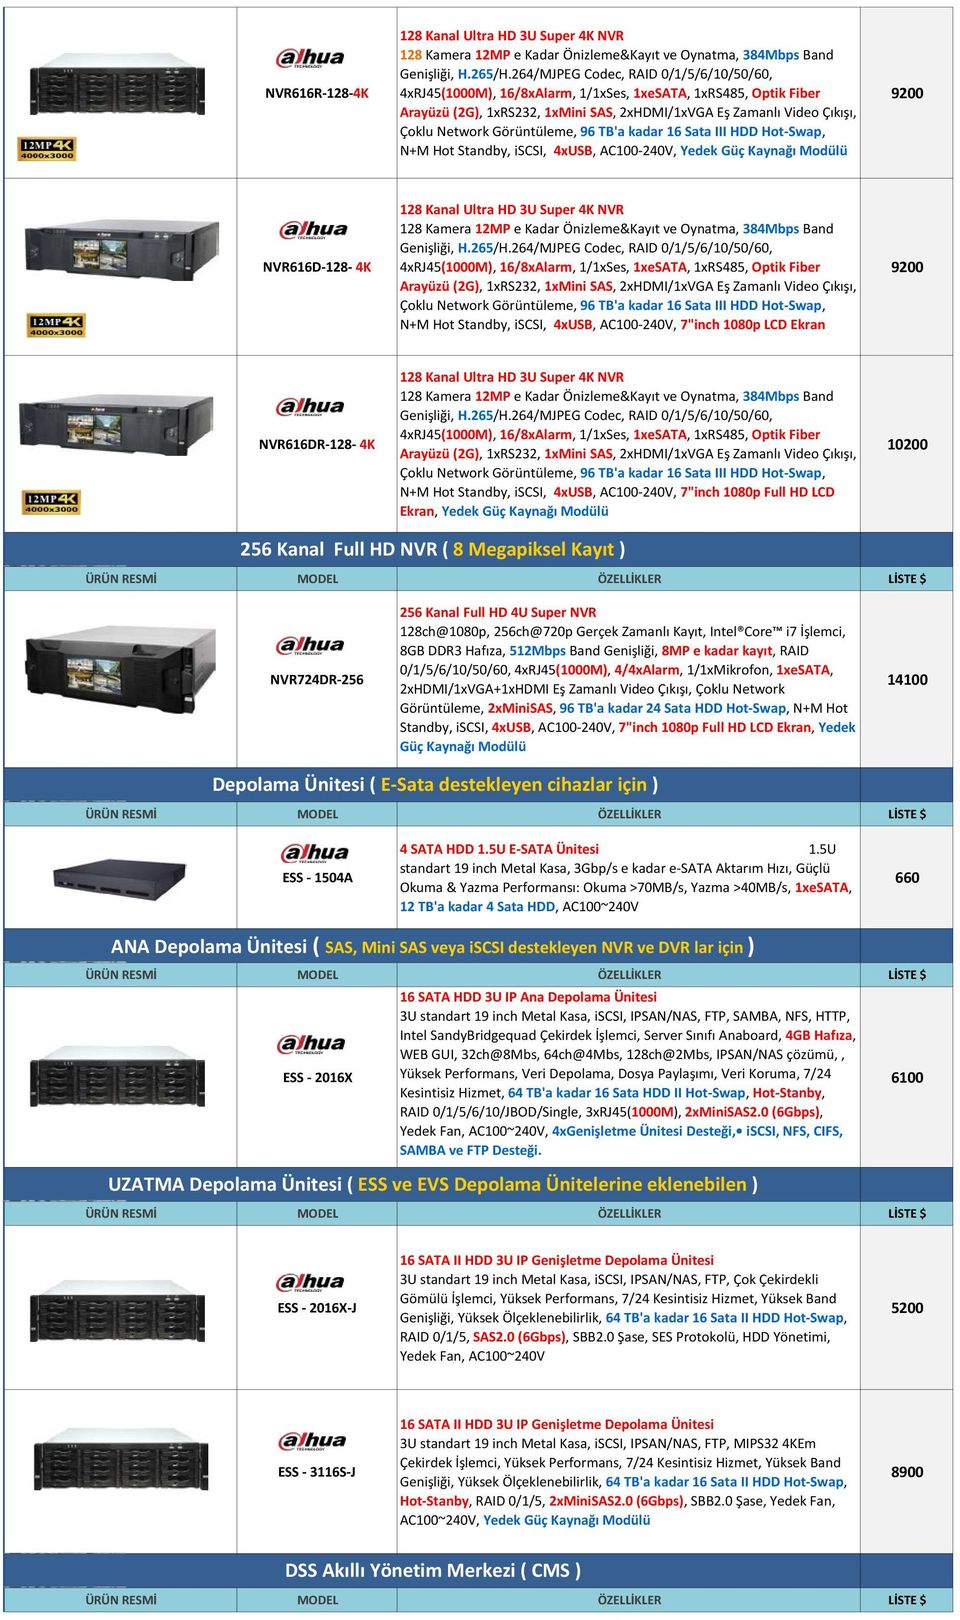 NVR616D-128-4K 128 Kanal Ultra HD 3U Super 4K NVR 128 Kamera 12MP e Kadar Önizleme&Kayıt ve Oynatma, 384Mbps Band 4xRJ45(1000M), 16/8xAlarm, 1/1xSes, 1xeSATA, 1xRS485, Optik Fiber Arayüzü (2G),